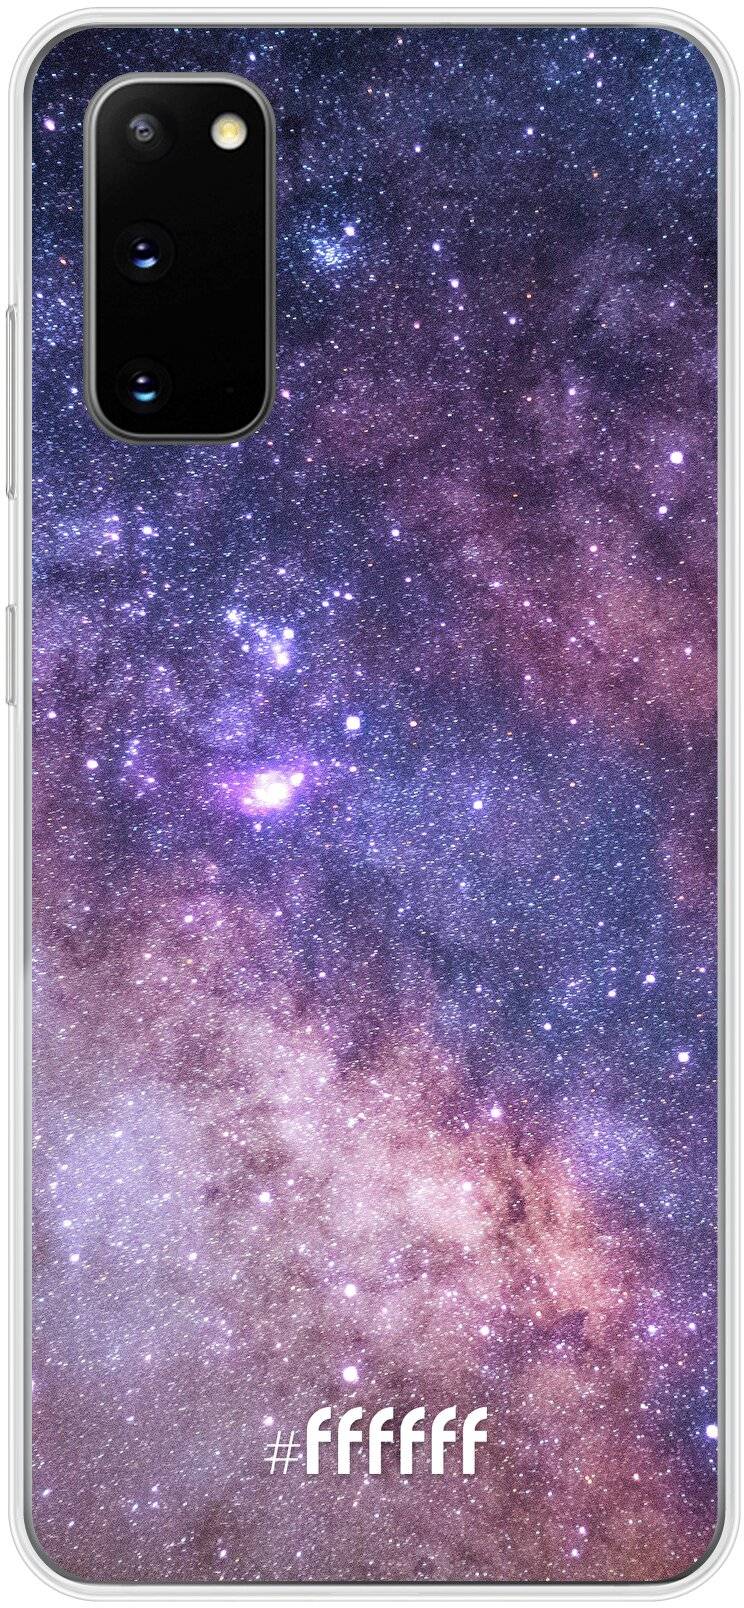 Galaxy Stars Galaxy S20